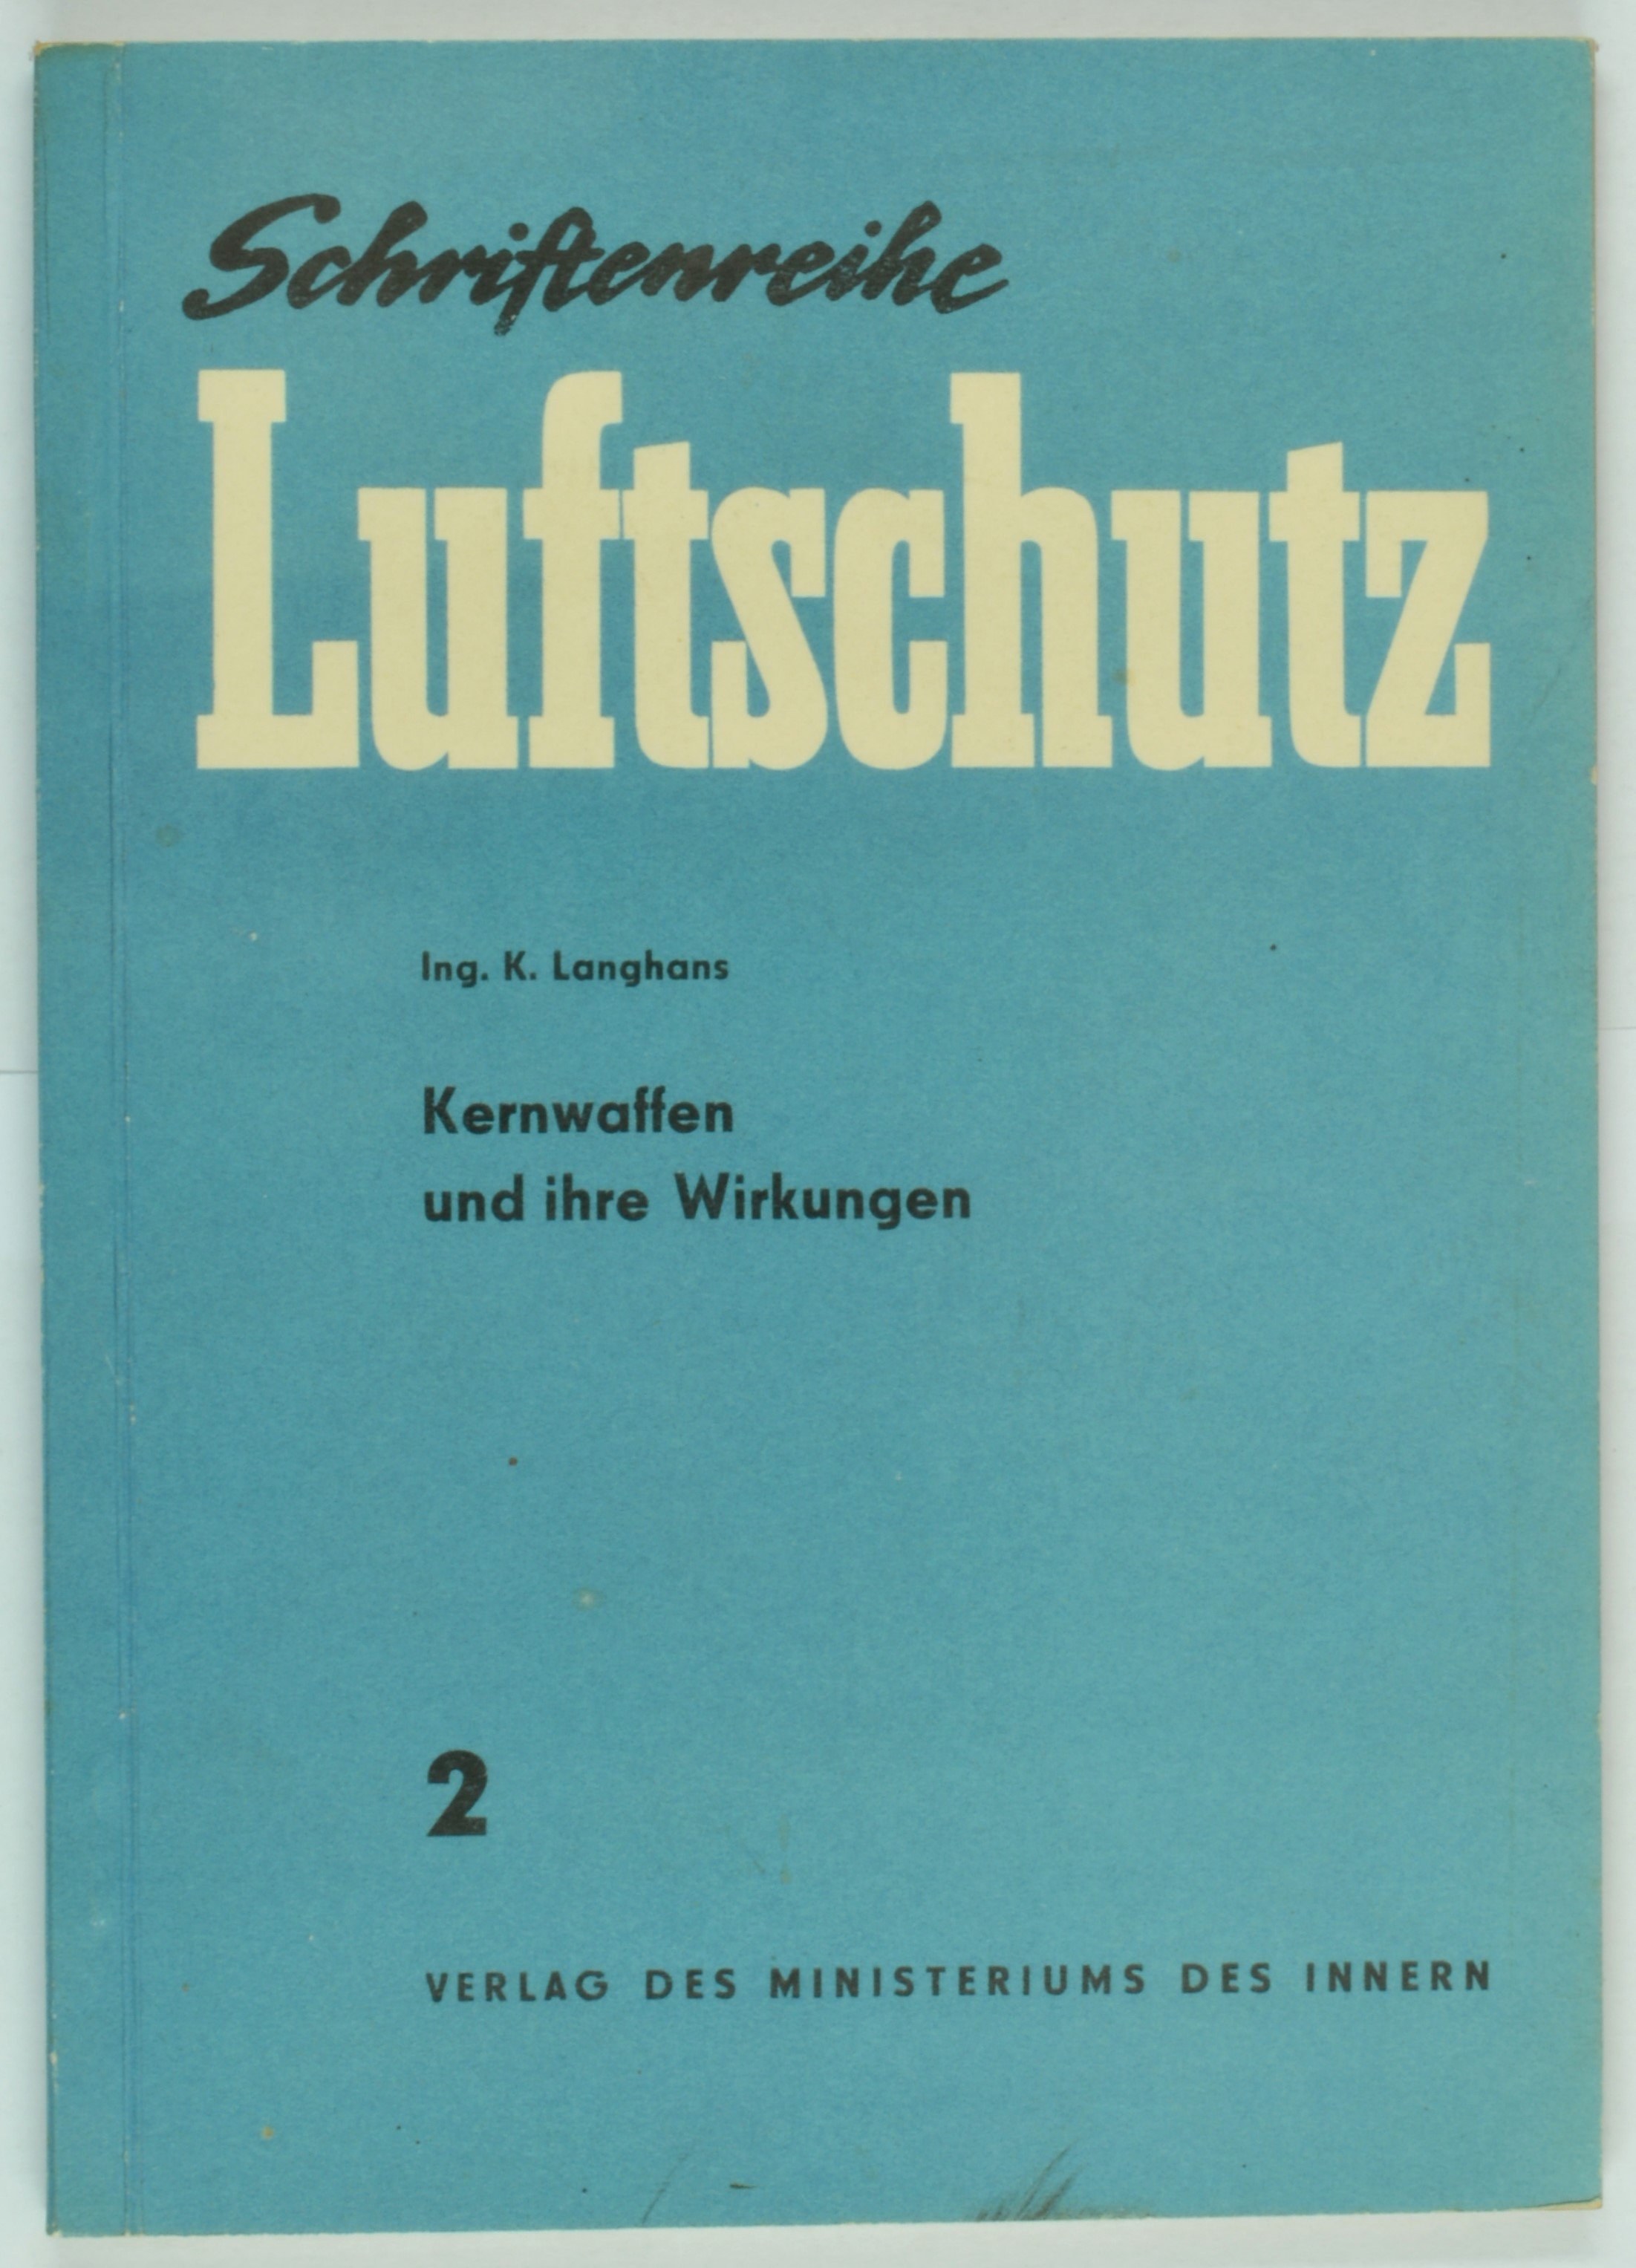 Broschüre "Schriftenreihe Luftschutz" 2 (DDR Geschichtsmuseum im Dokumentationszentrum Perleberg CC BY-SA)